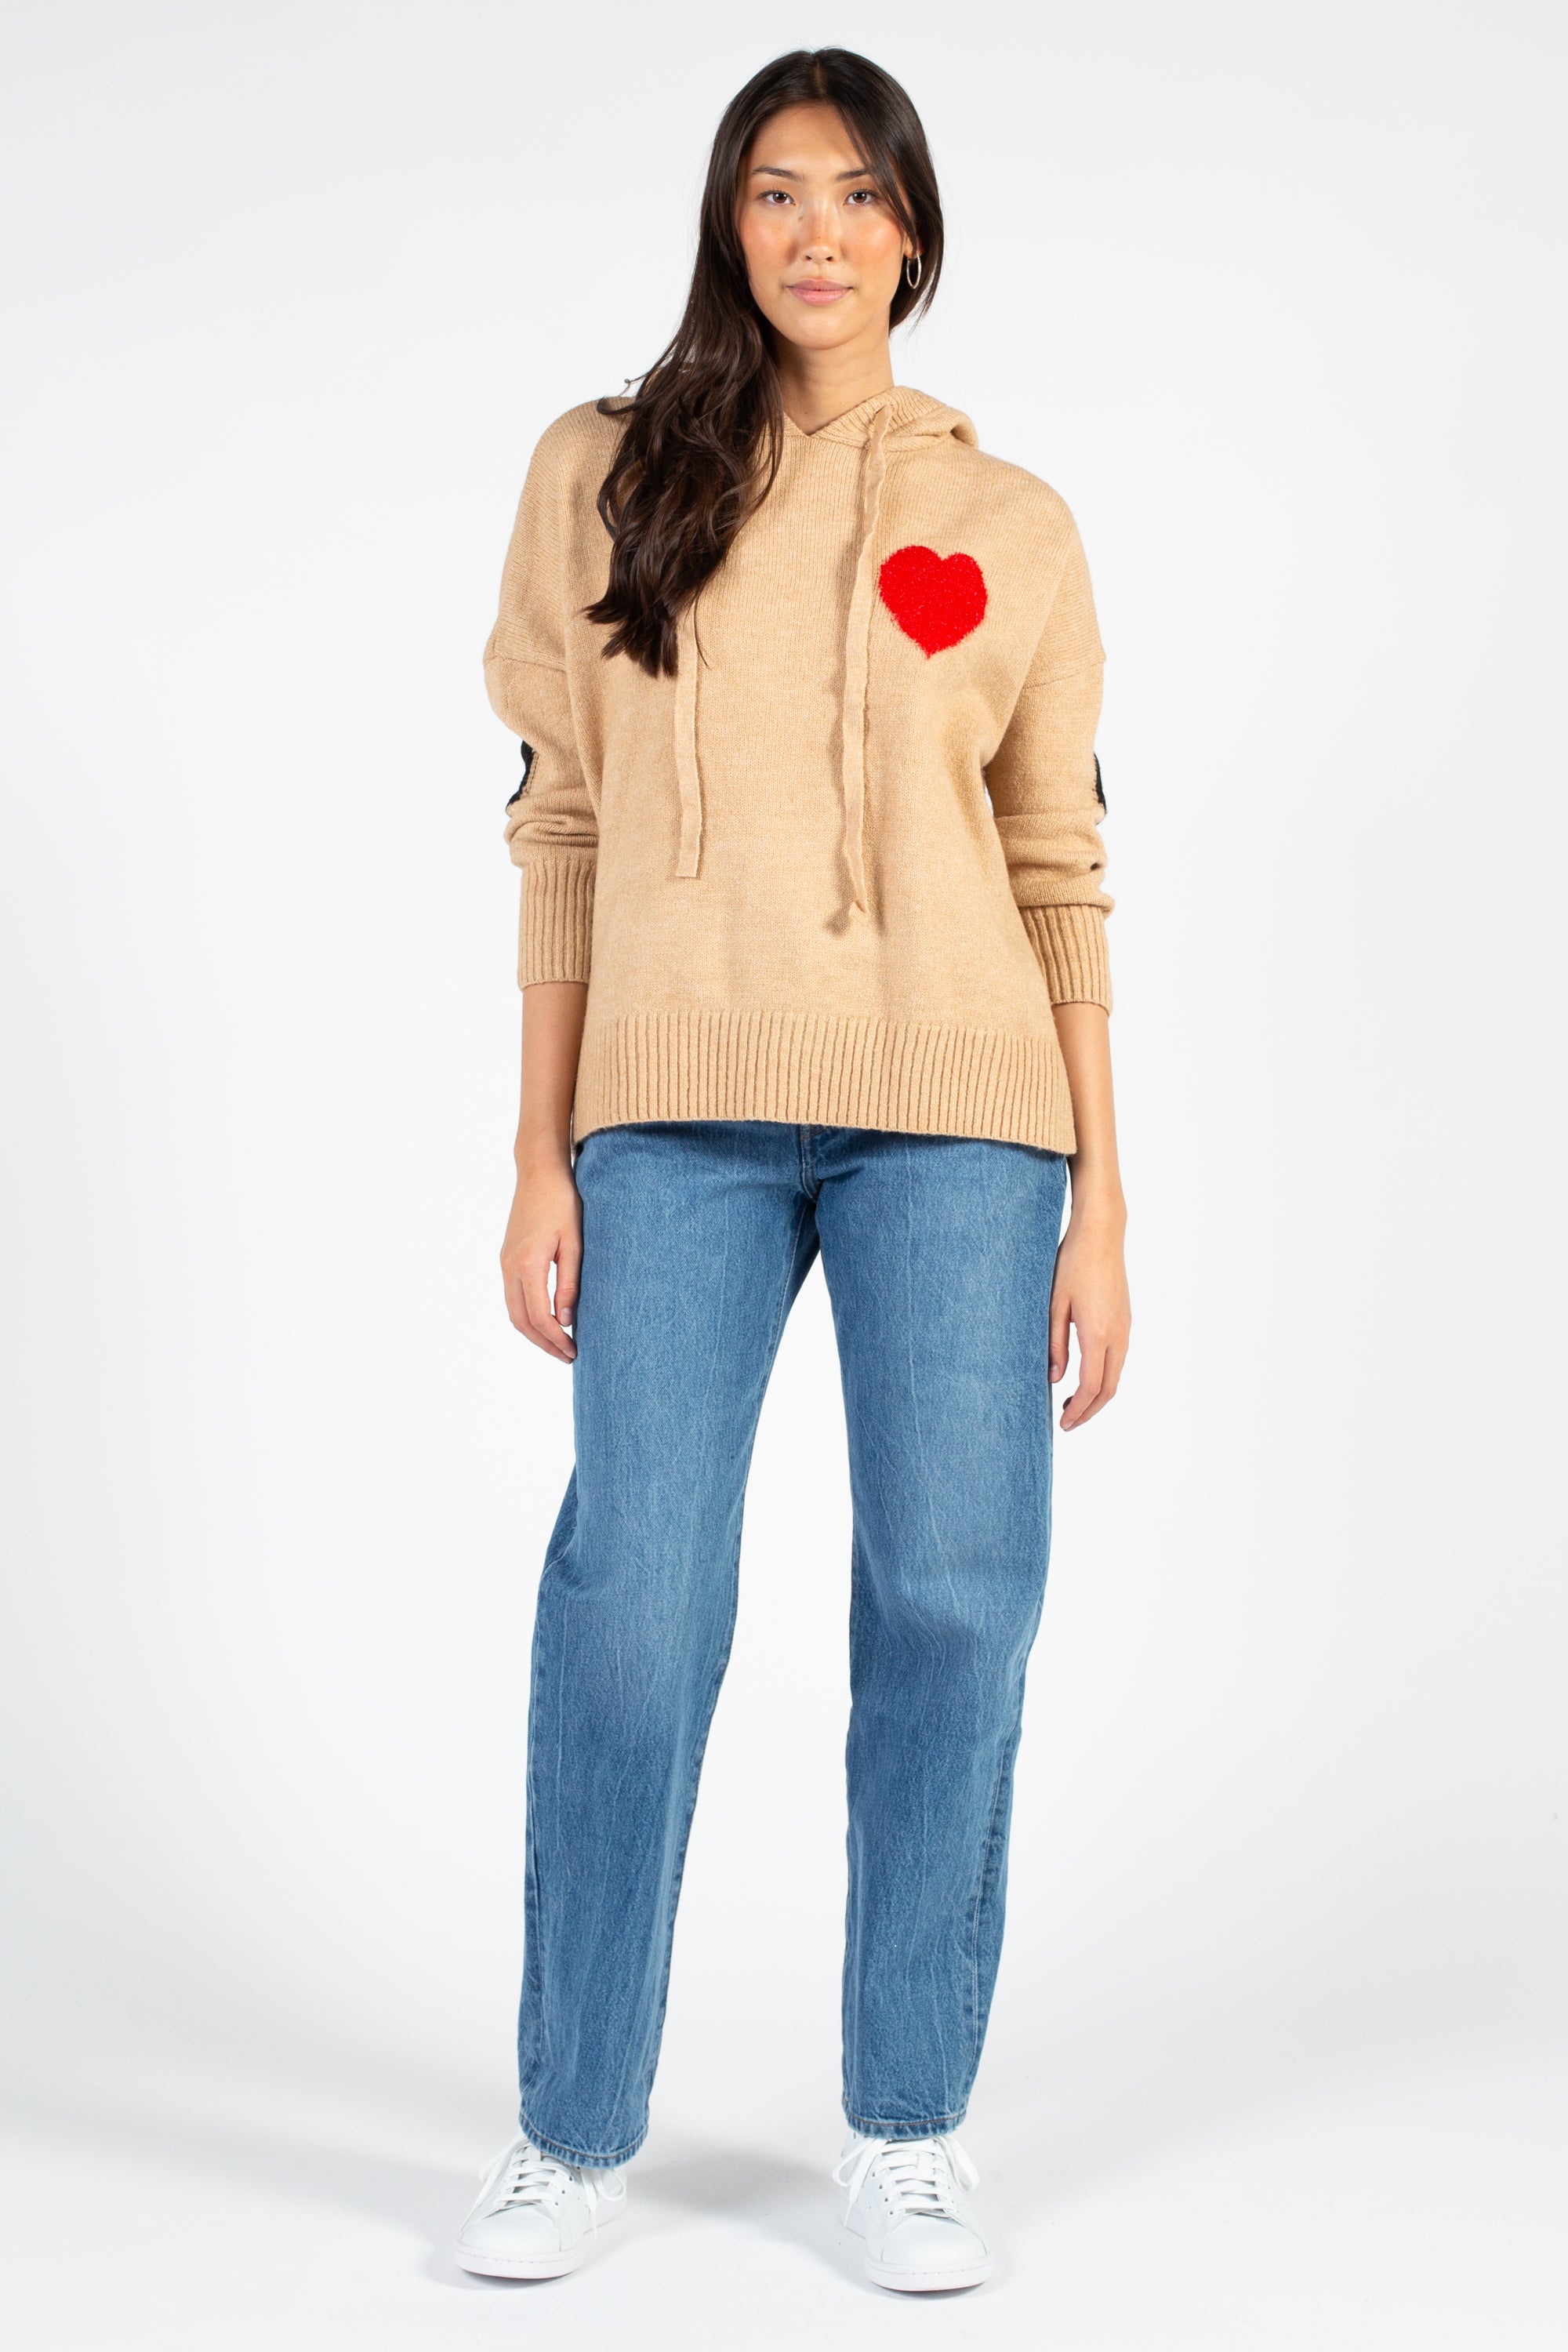 "Love Me" Knit Heart Sweater